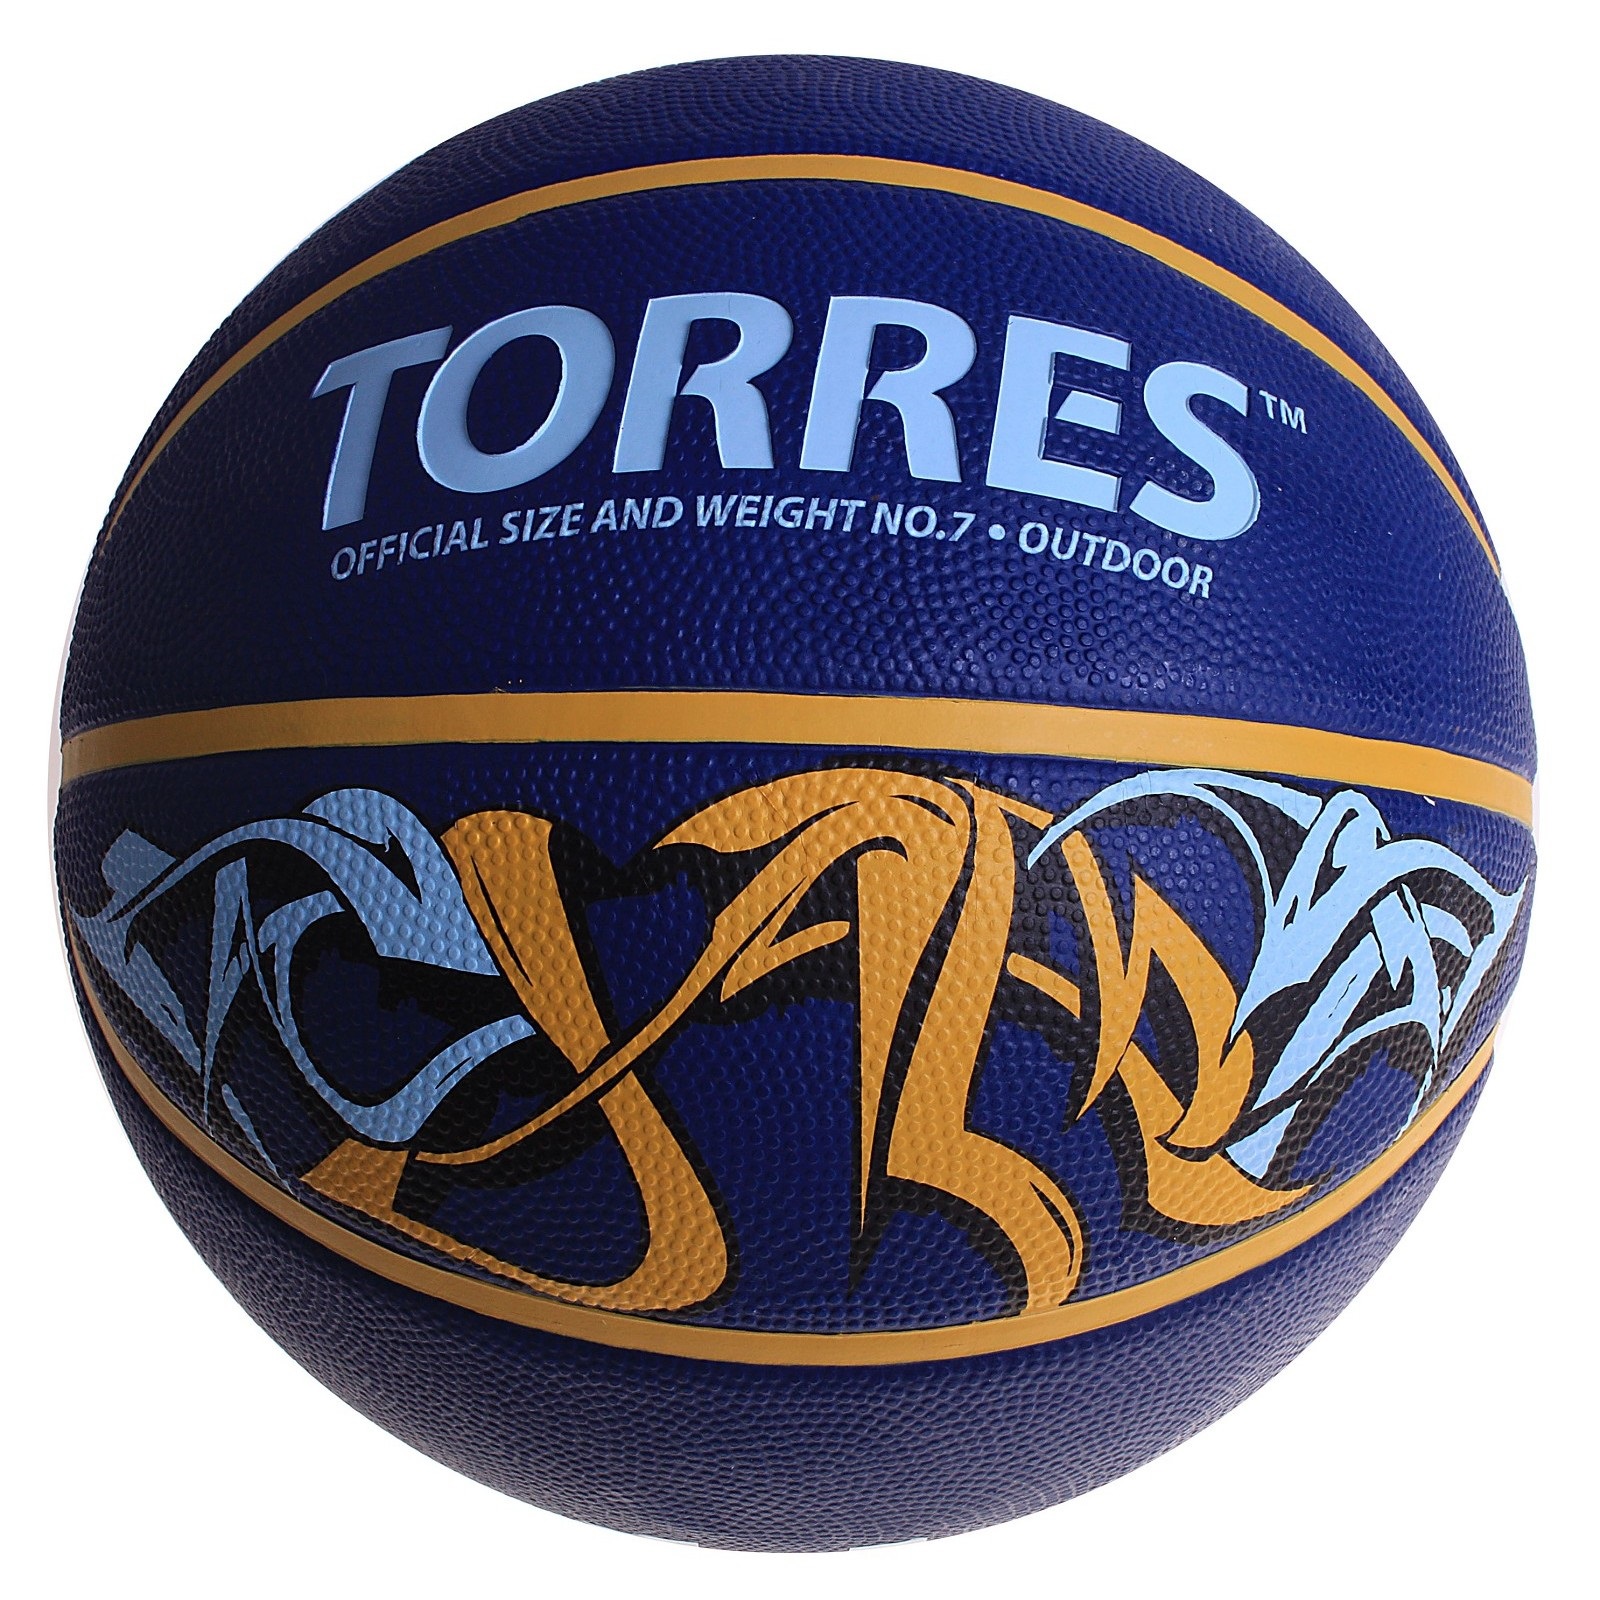 Баскетбольный мяч Torres bm300